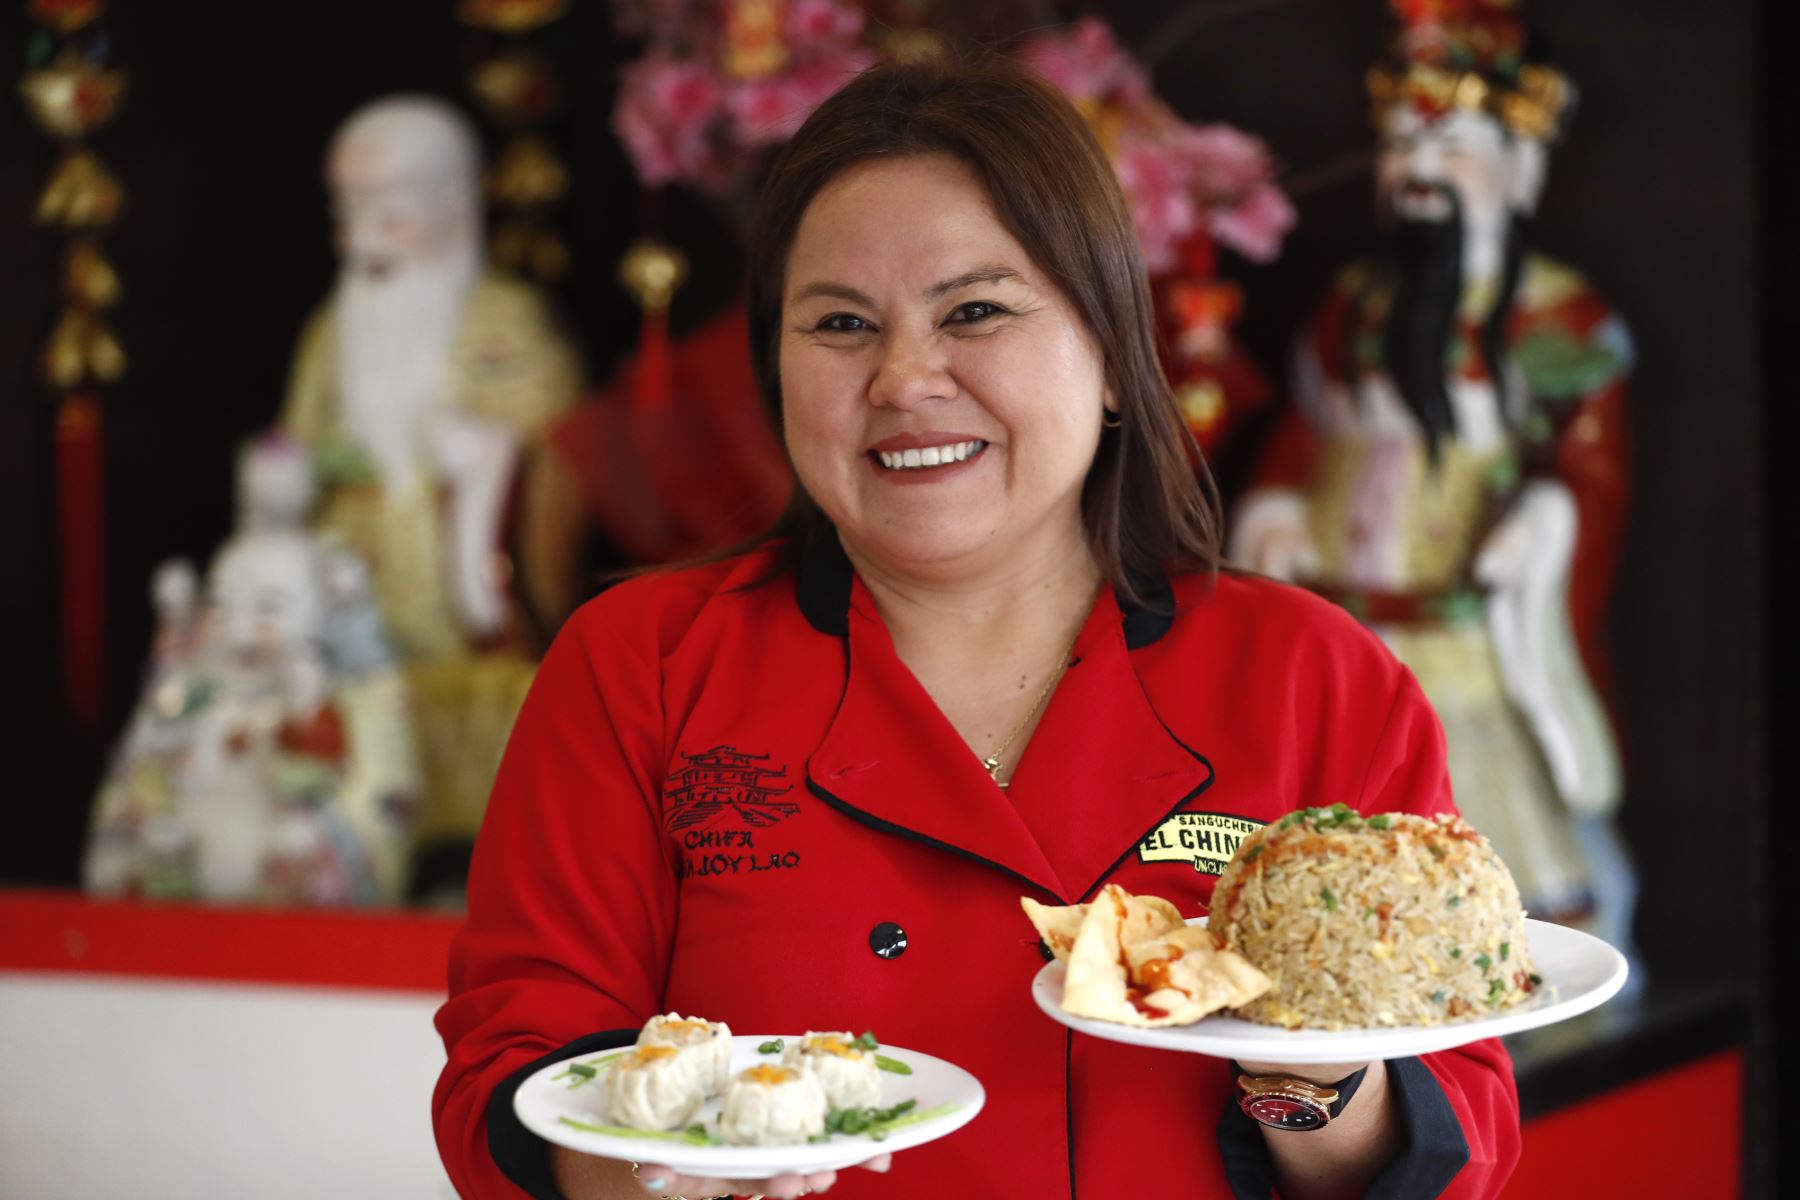 Vanessa Yong, dueña del Chifa San Joy Lao de Surco presenta dos de sus platos bandera, el arroz chaufa de chancho y pato, y el siu may de pavo. Foto: ANDINA/Daniel Bracamonte